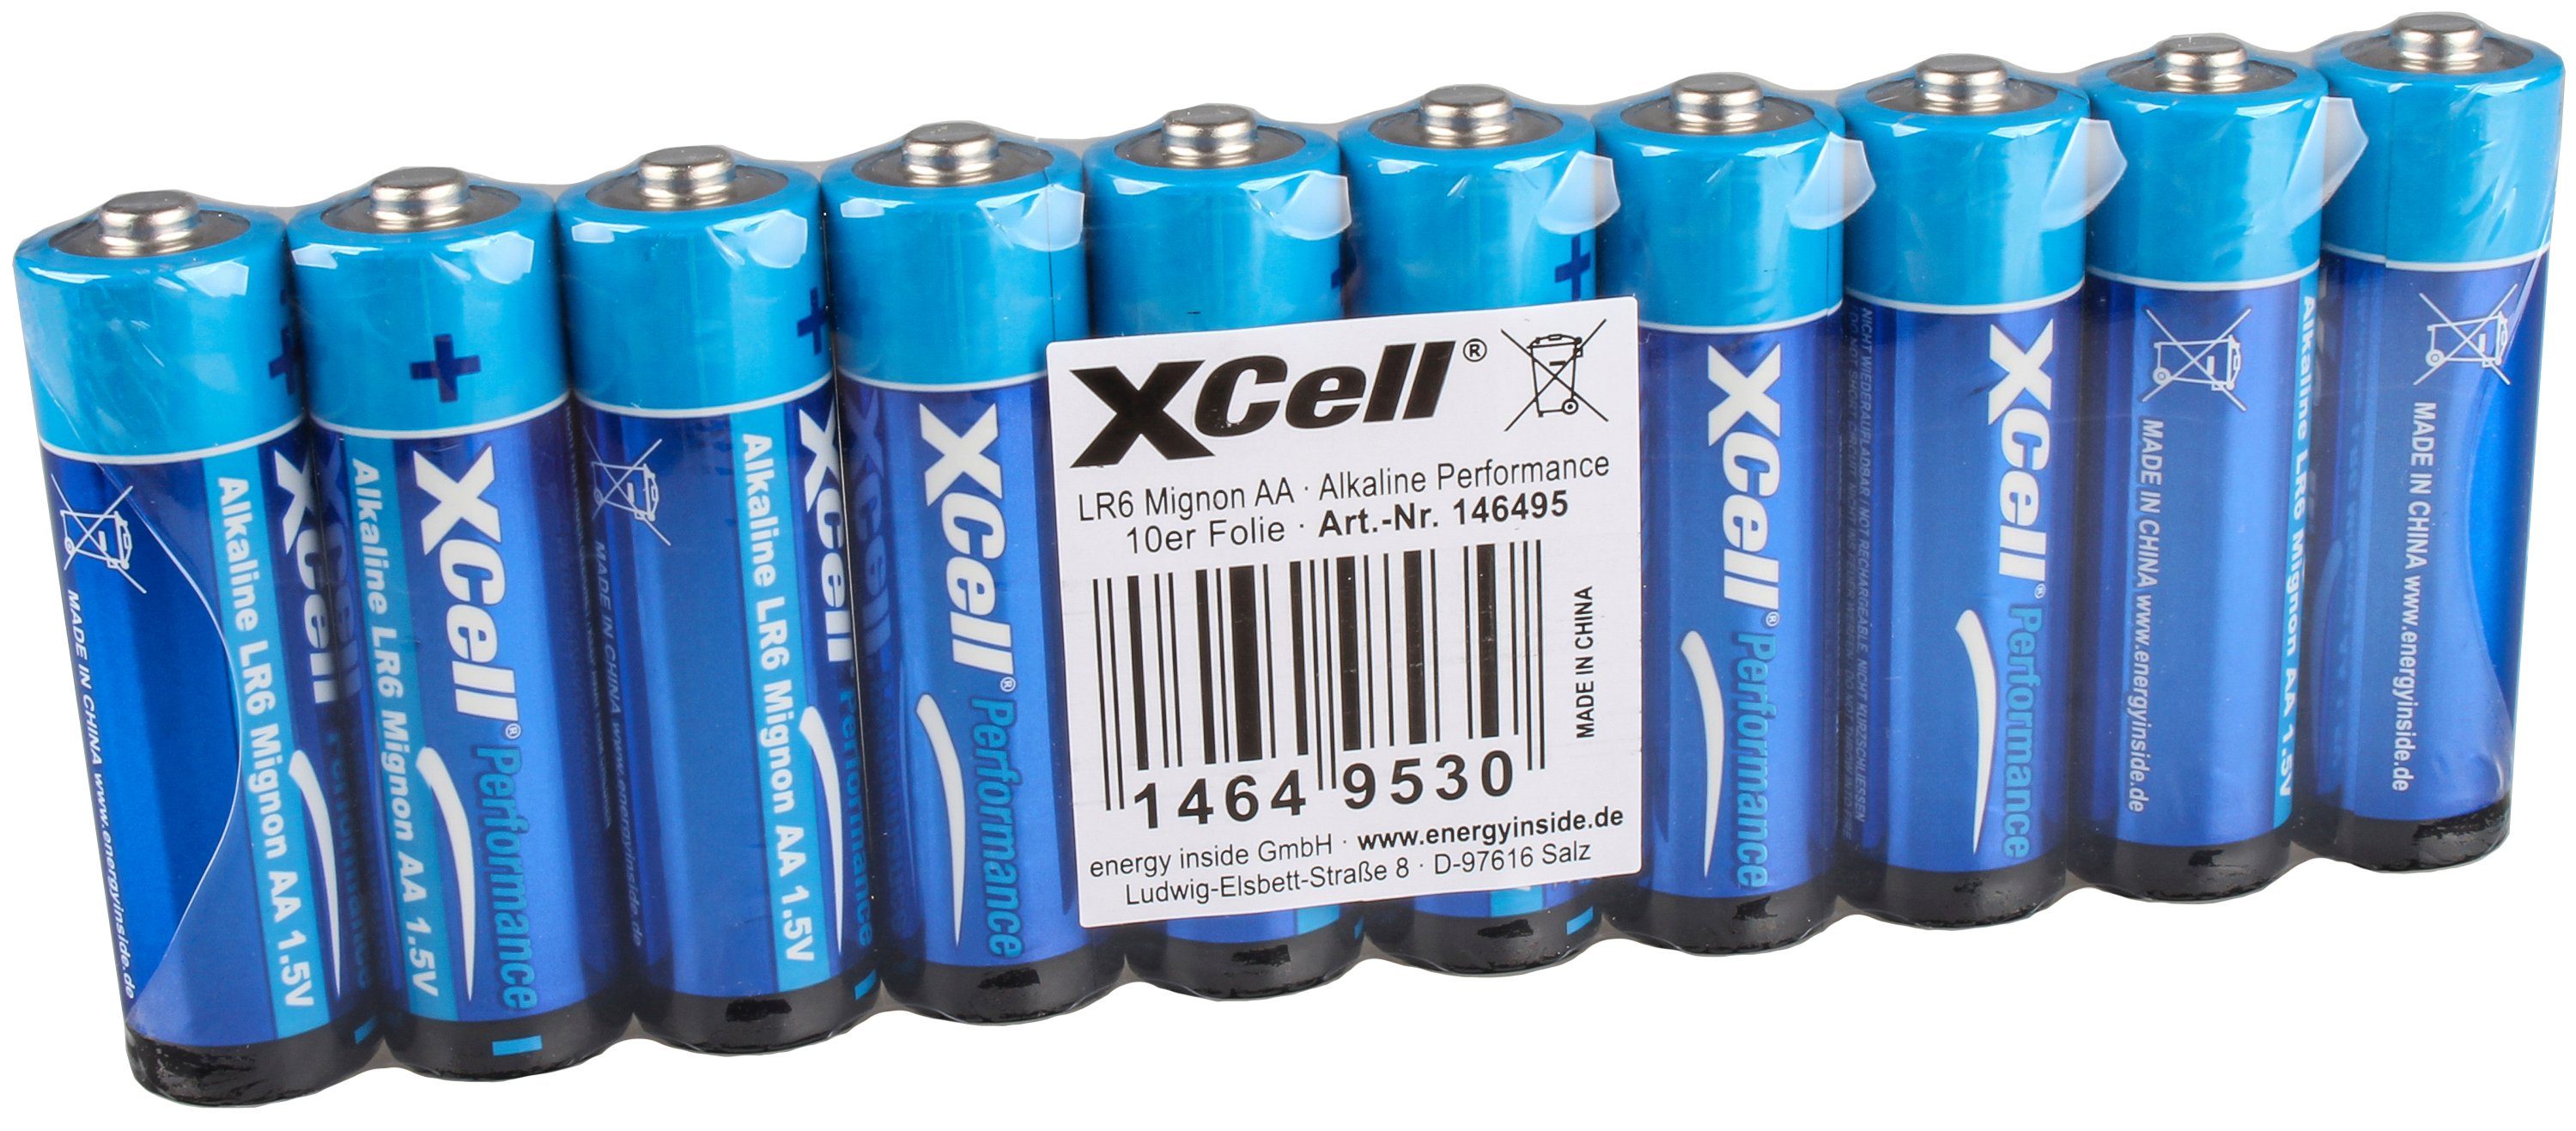 Alkaline Xcell Karton Mignon Batterie Akku 1,5V 100er XCell